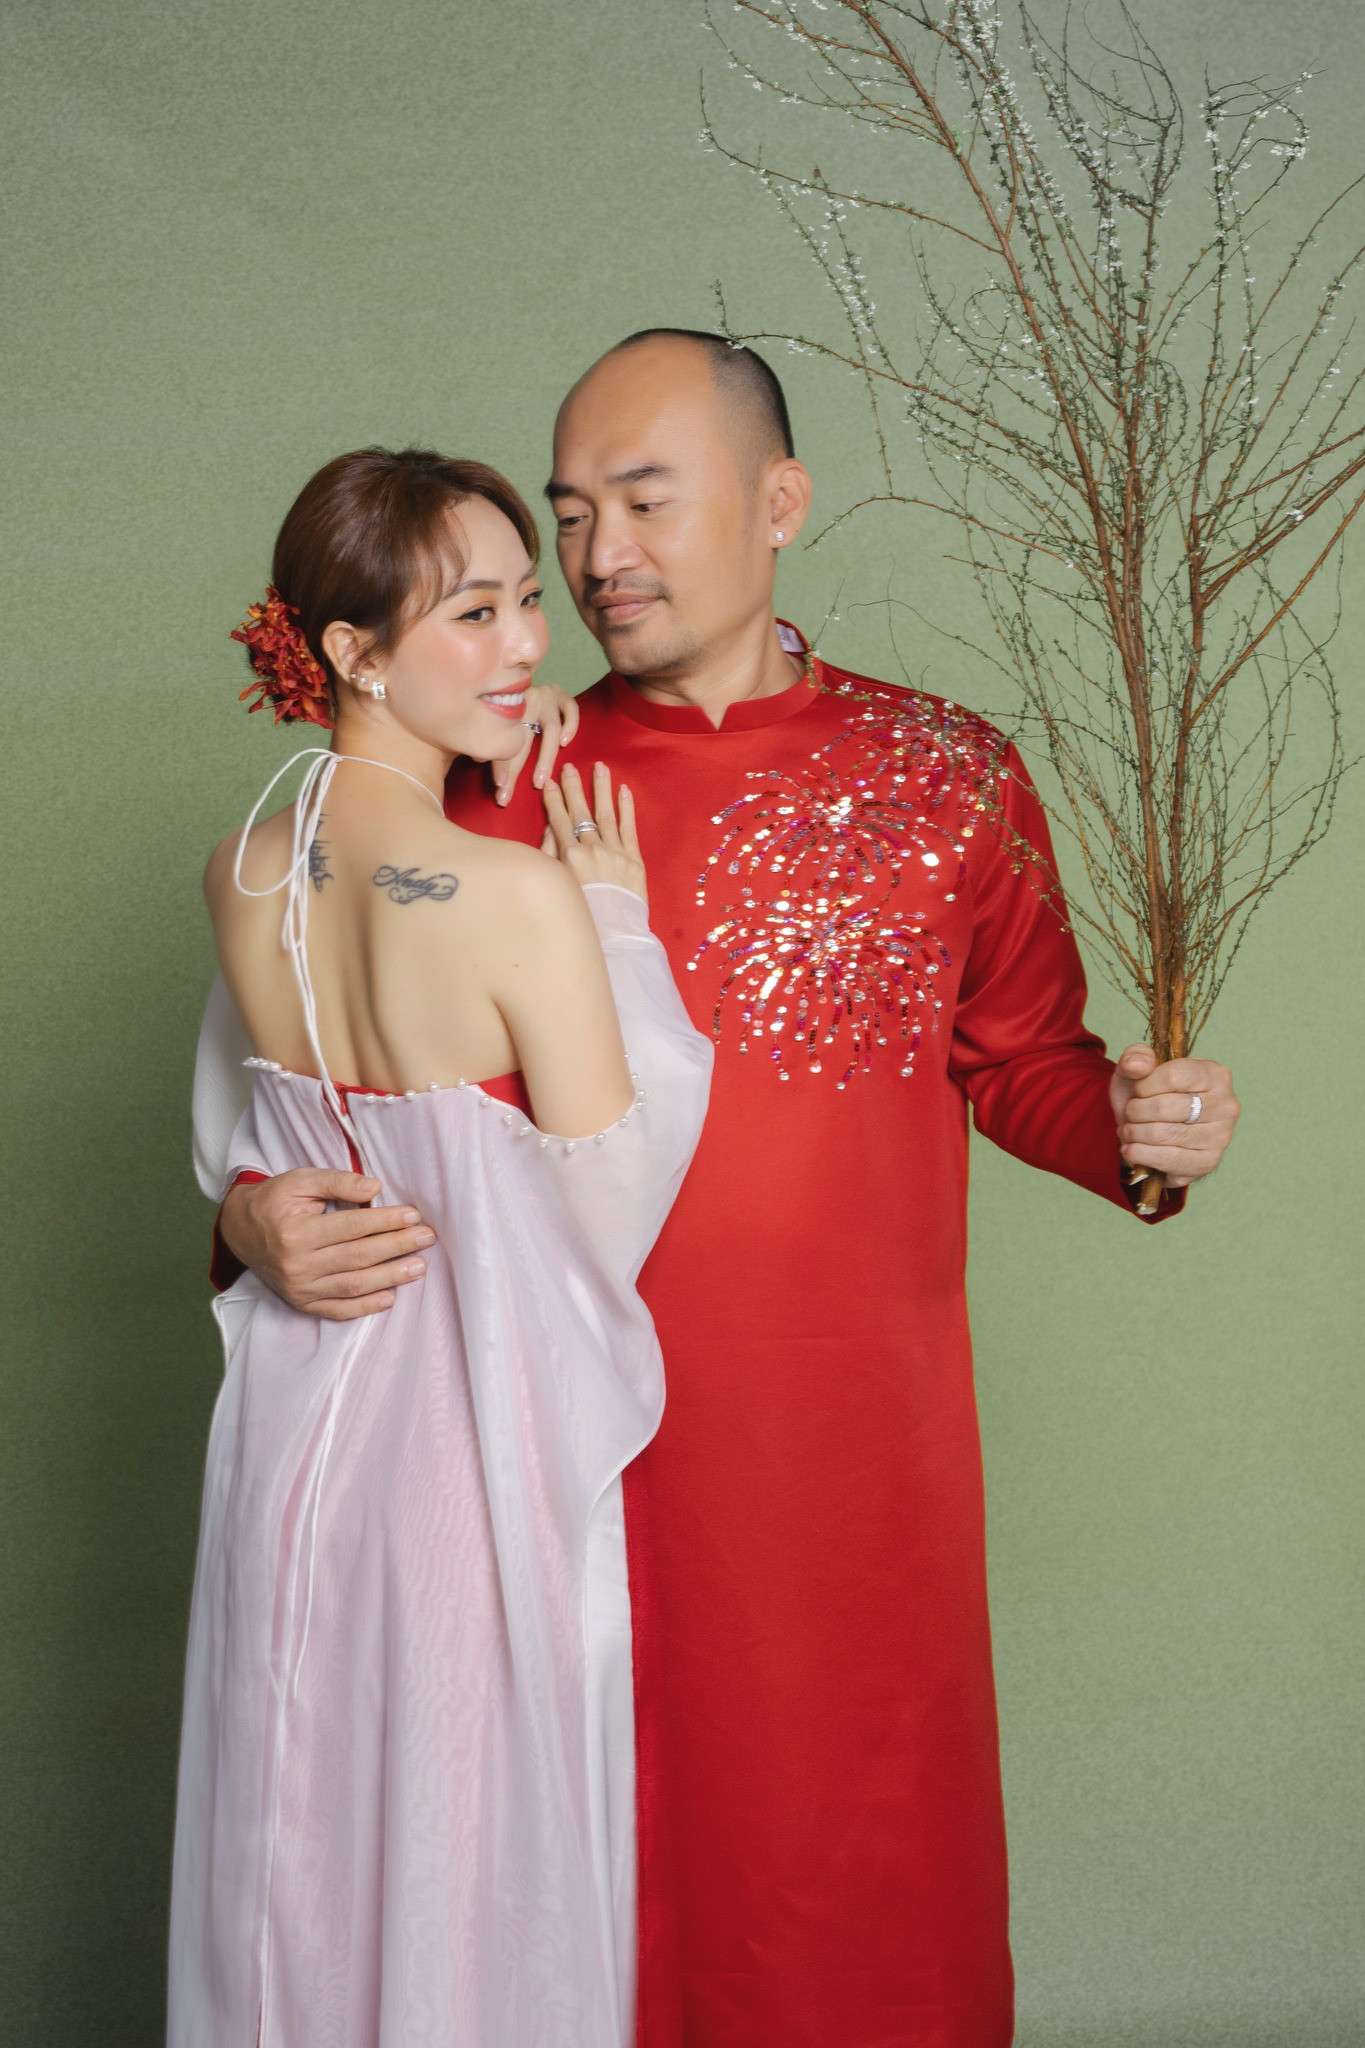 Thu Trang – Tiến Luật được xem là cặp vợ chồng hạnh phúc, thành công của làng giải trí Việt.